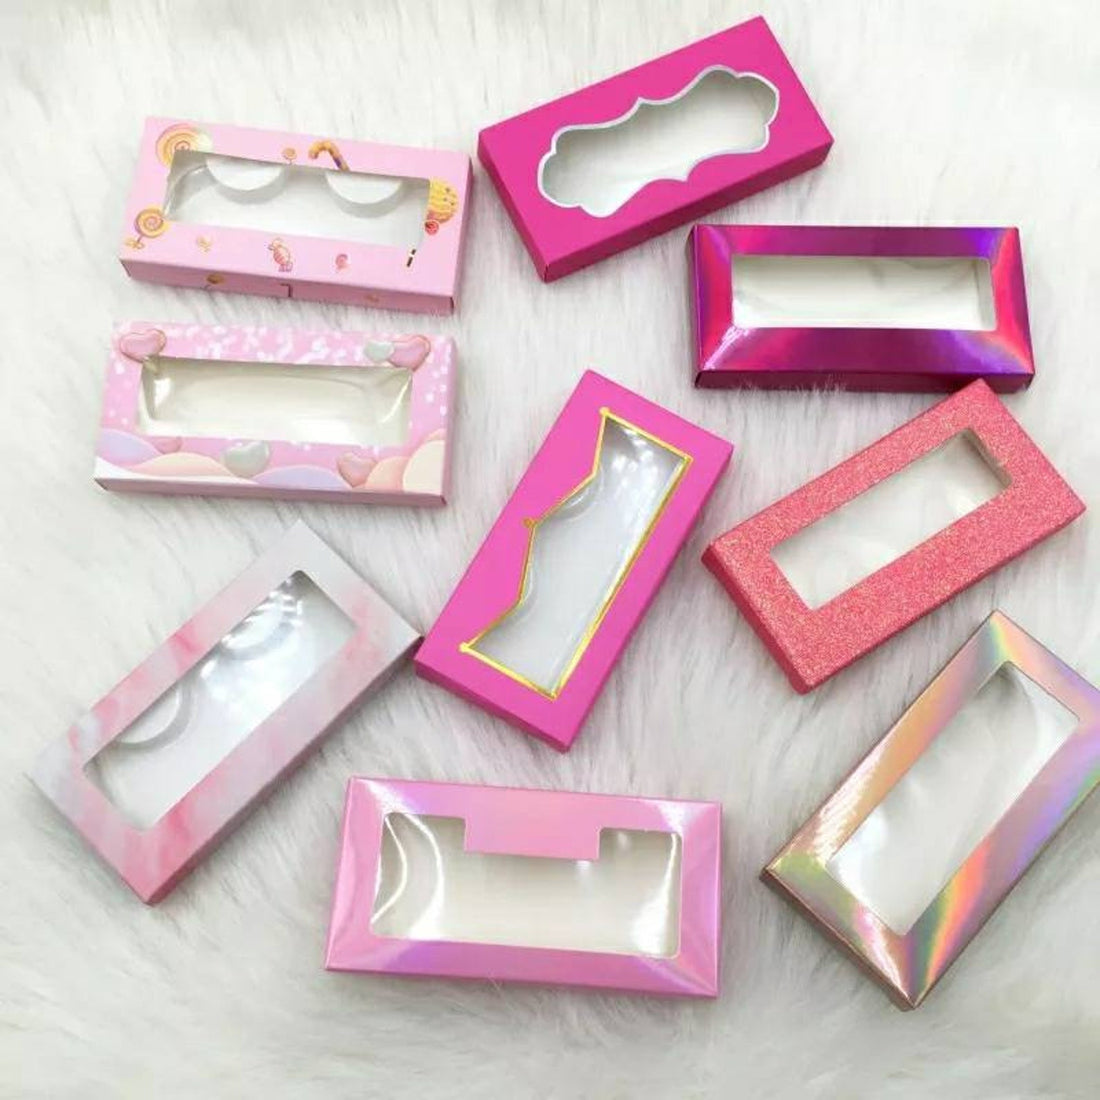 empty eyelash boxes